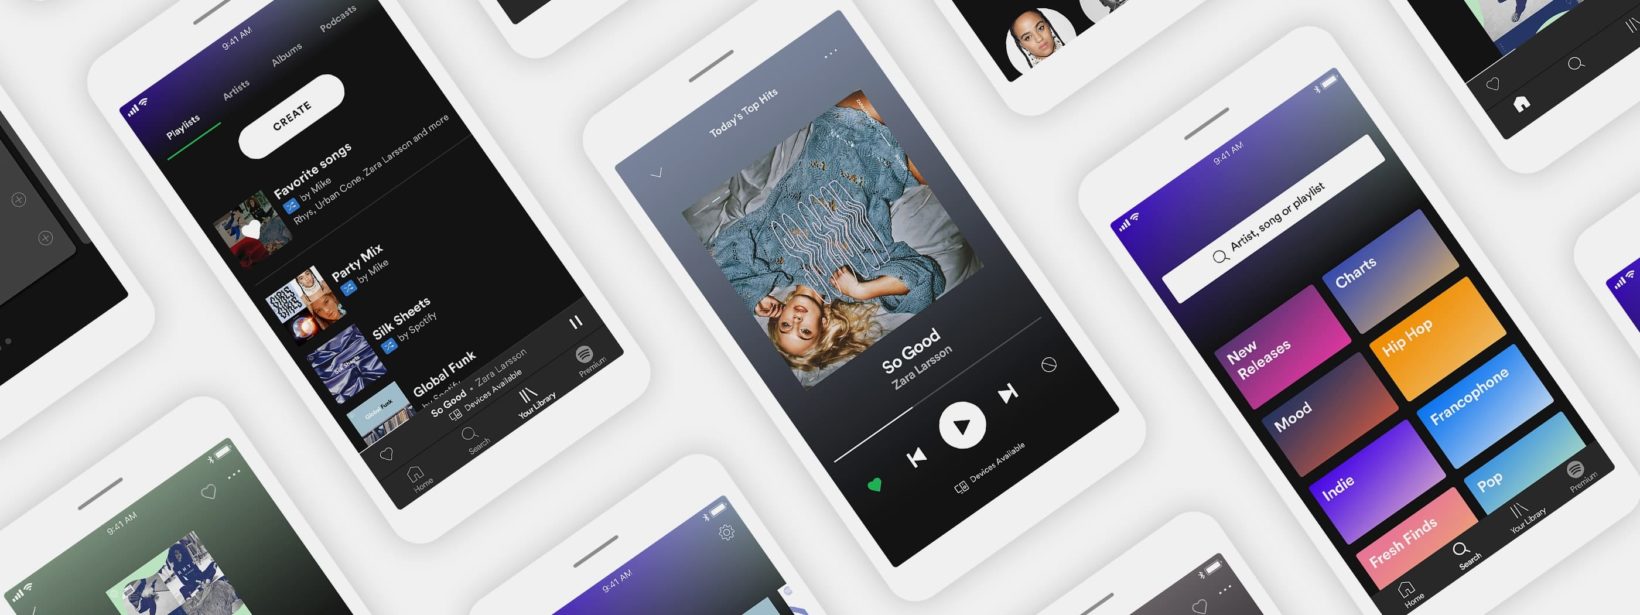 risultati Spotify, foto schermate Spotify su smartphone